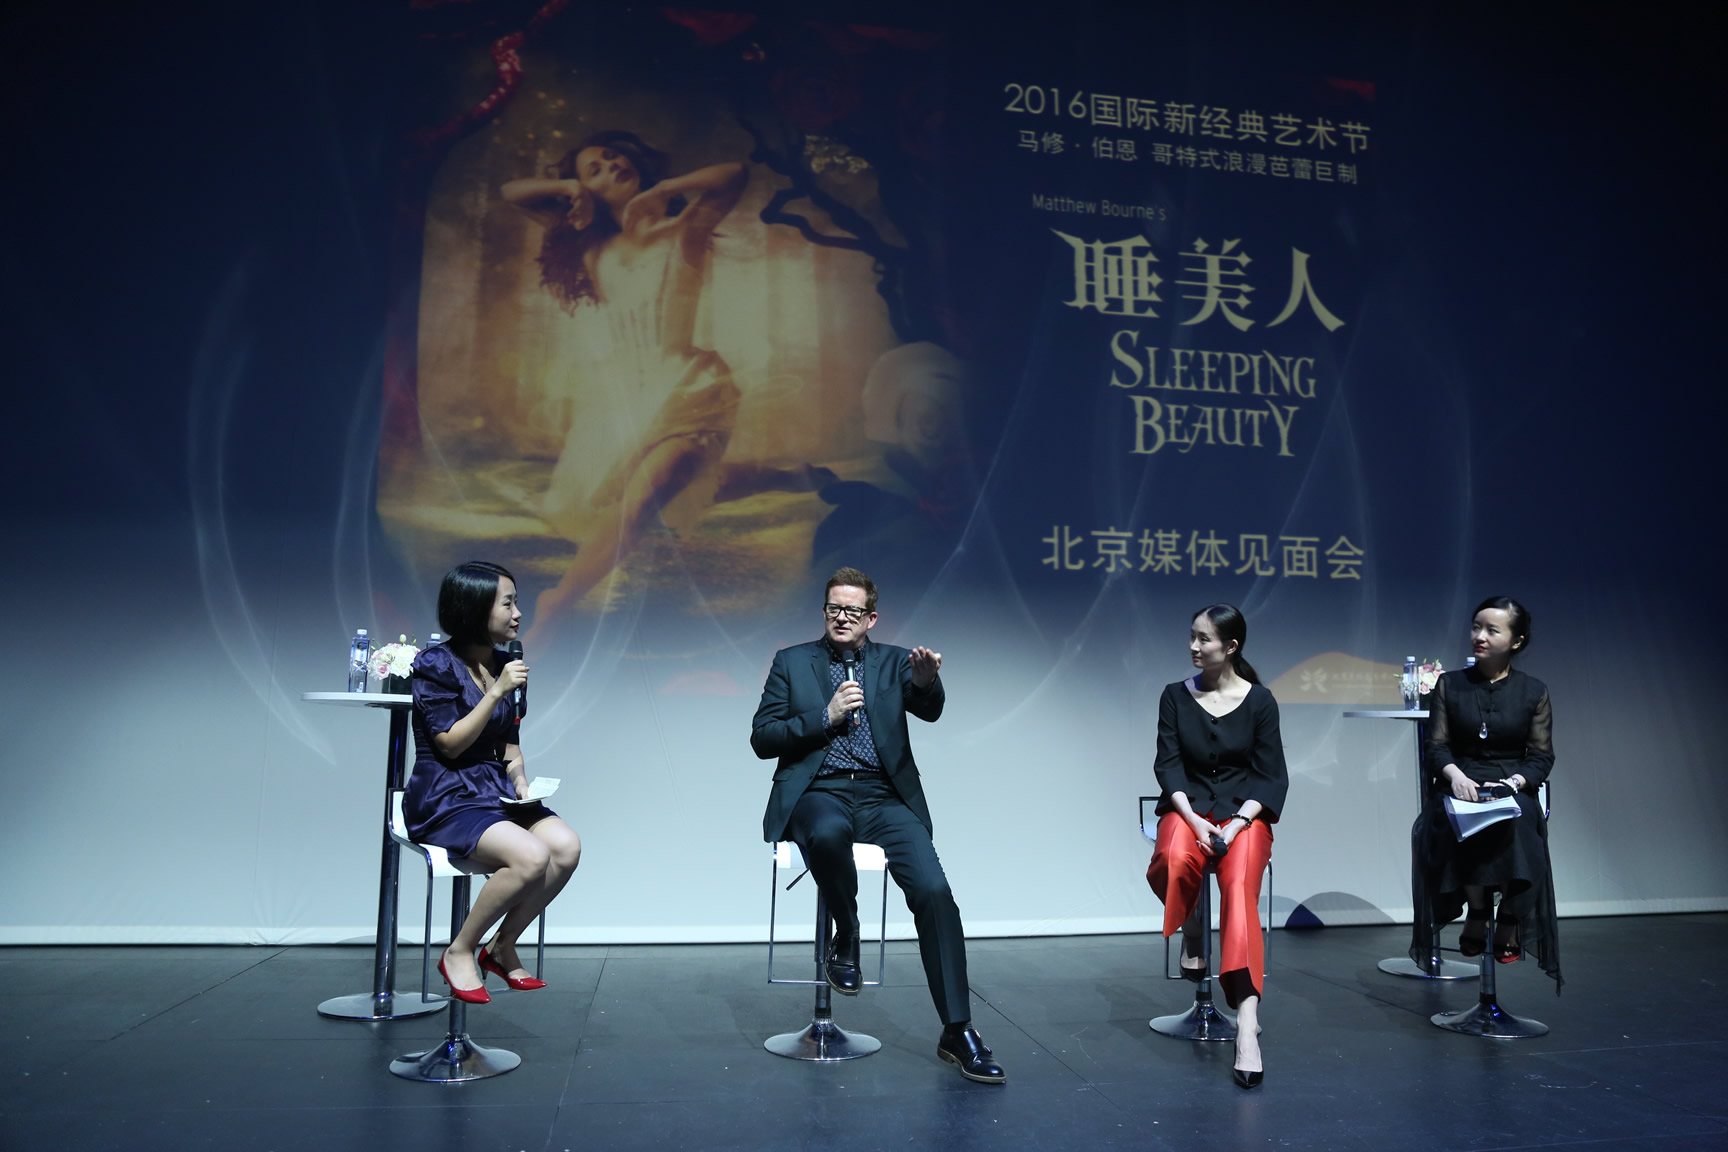 编舞大师马修•伯恩爵士首访京城 9月携舞蹈巨制《睡美人》亮相天桥艺术中心